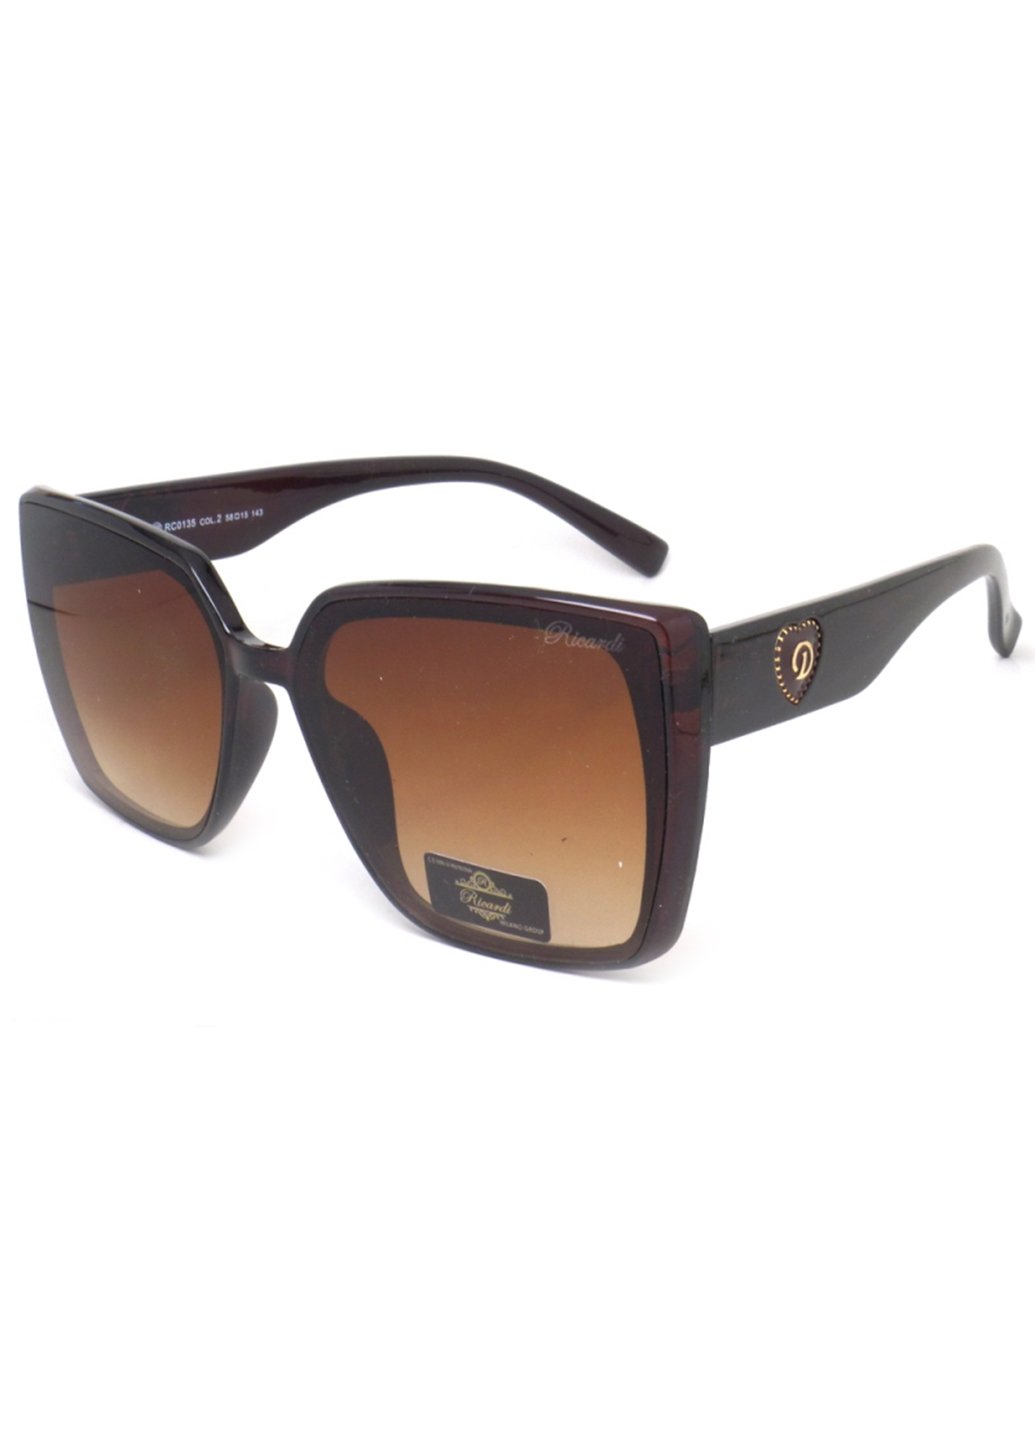 Купить Женские солнцезащитные очки Ricardi RC0135 110015 - Коричневый в интернет-магазине